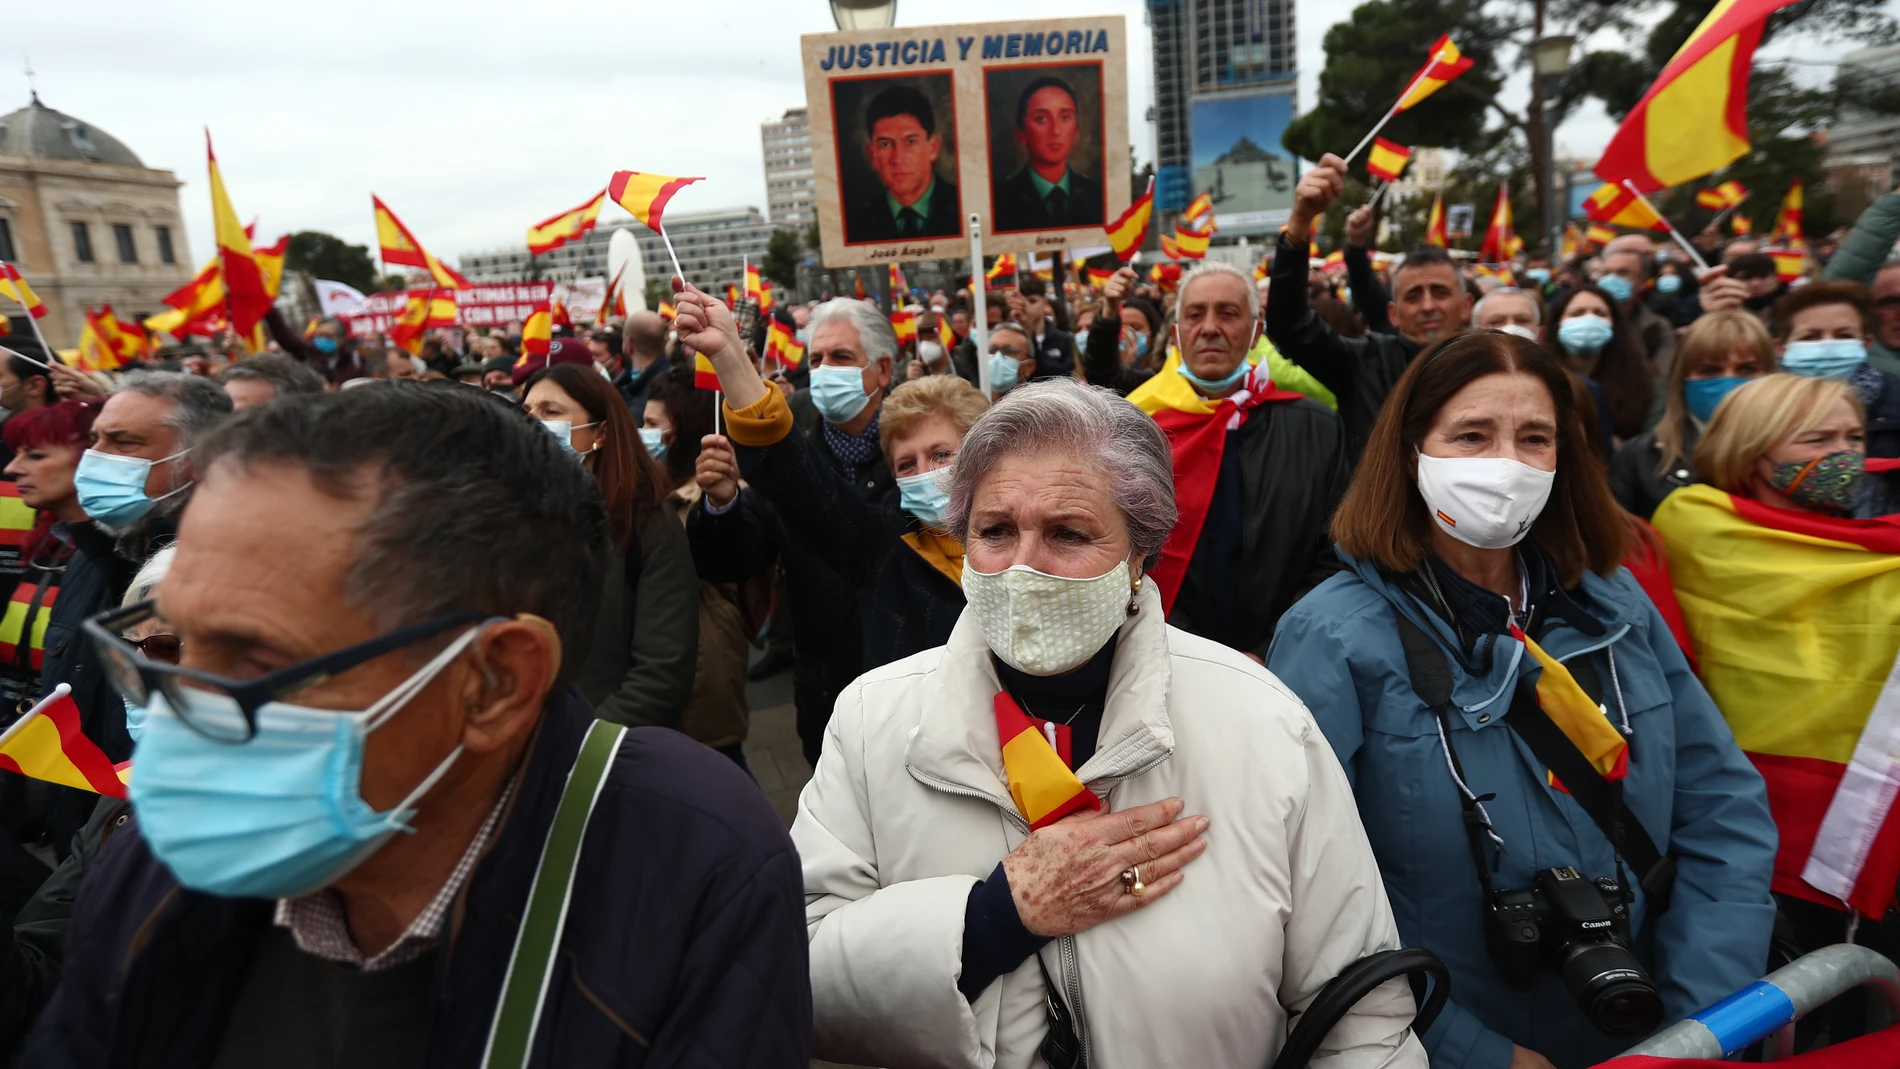 Manifestación convocada por la Asociación Víctimas del Terrorismo (AVT) bajo el lema "No todo vale, Gobierno traidor. Justicia para las víctimas del terrorismo", este sábado en la plaza de Colón en Madrid.